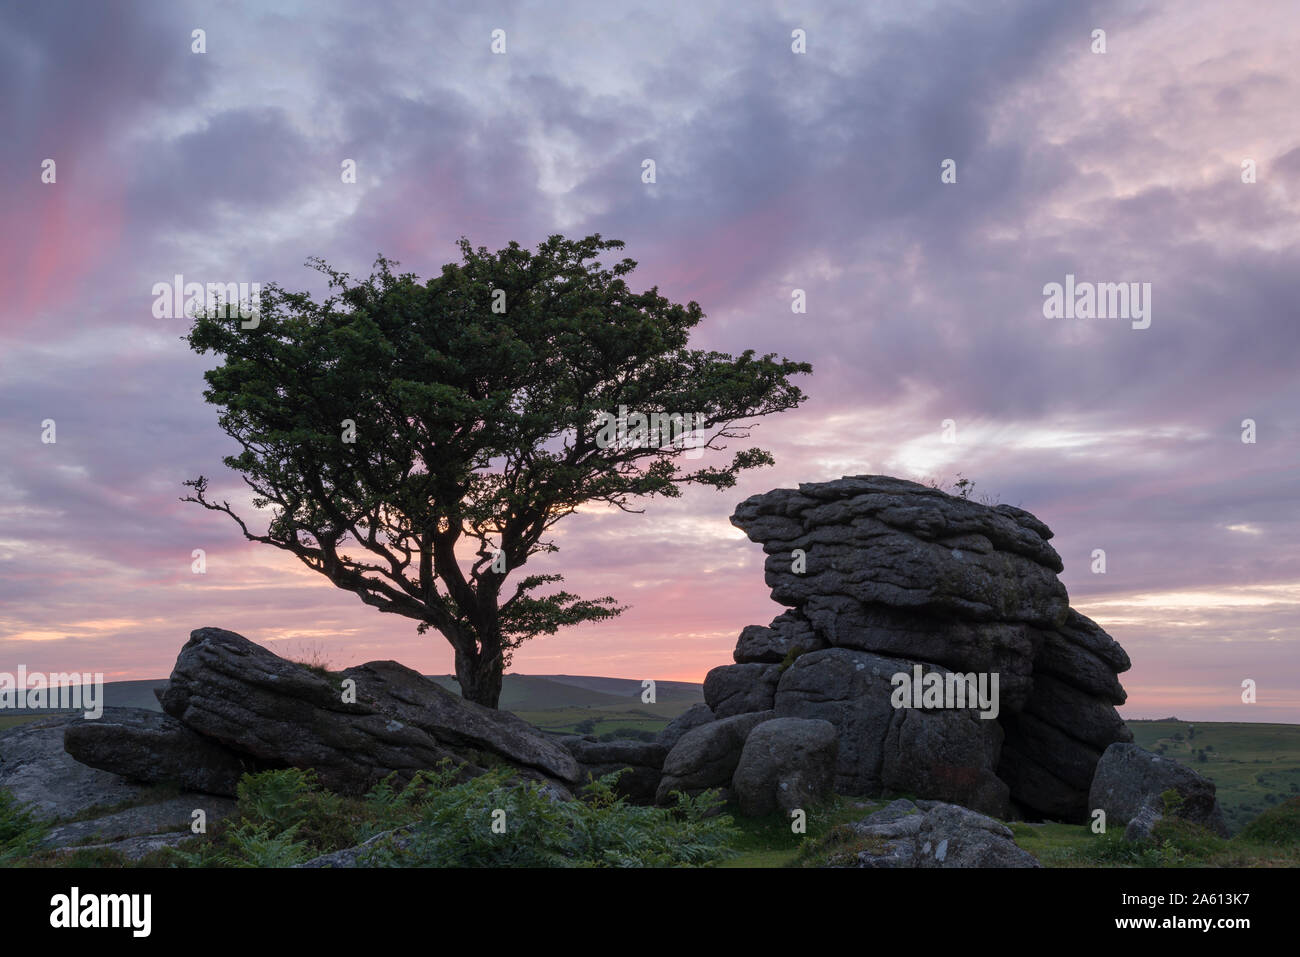 Arbre d'aubépine et de granite tor au coucher du soleil, Dartmoor National Park, Devon, Angleterre, Royaume-Uni, Europe Banque D'Images